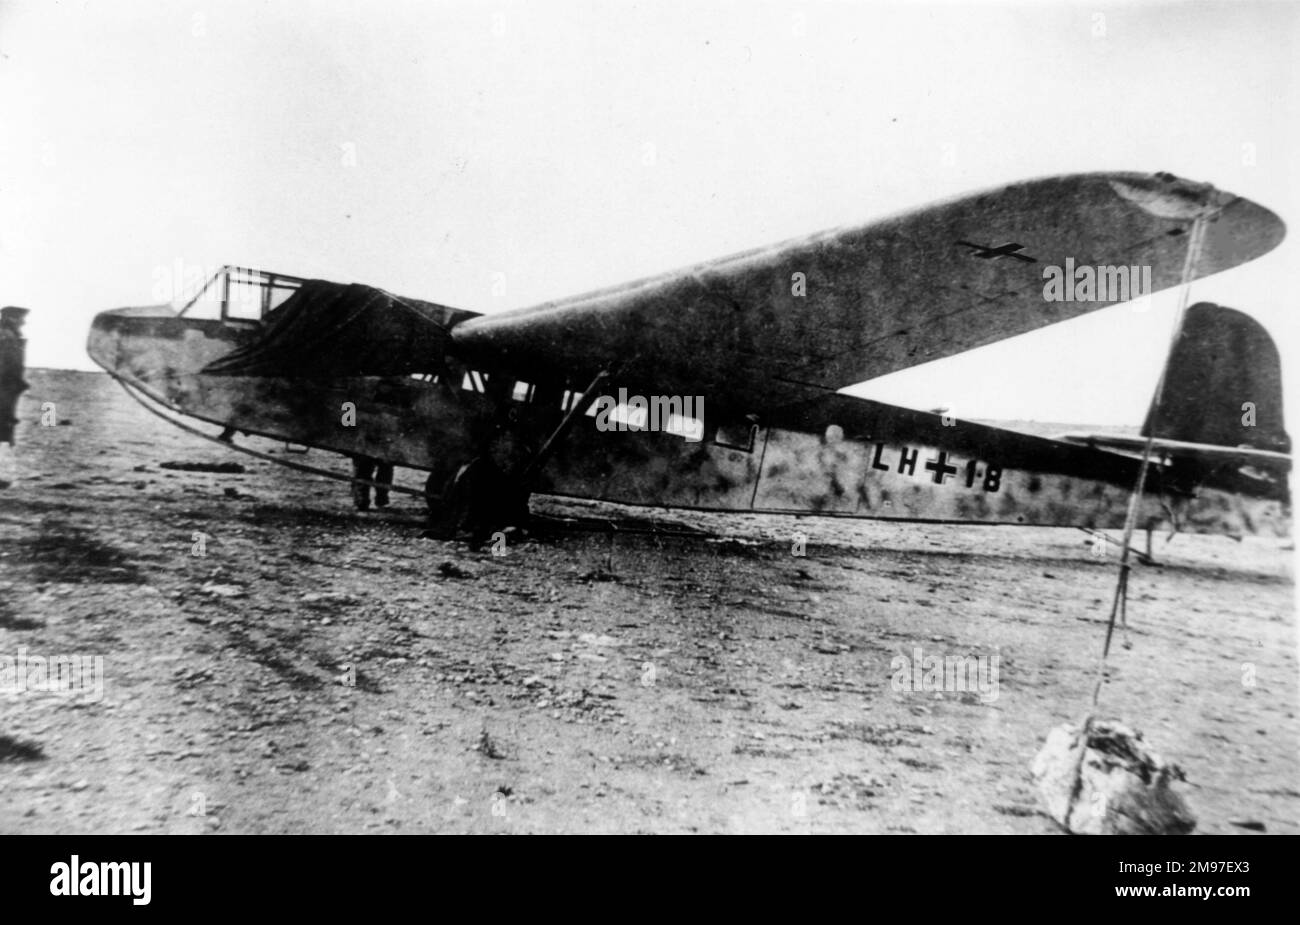 DFS 230B - der erste Truppengleiter der Luftwaffe, der beim Angriff auf Belgien im Mai 1940 eingesetzt wurde und Kreta bezwang. Stockfoto